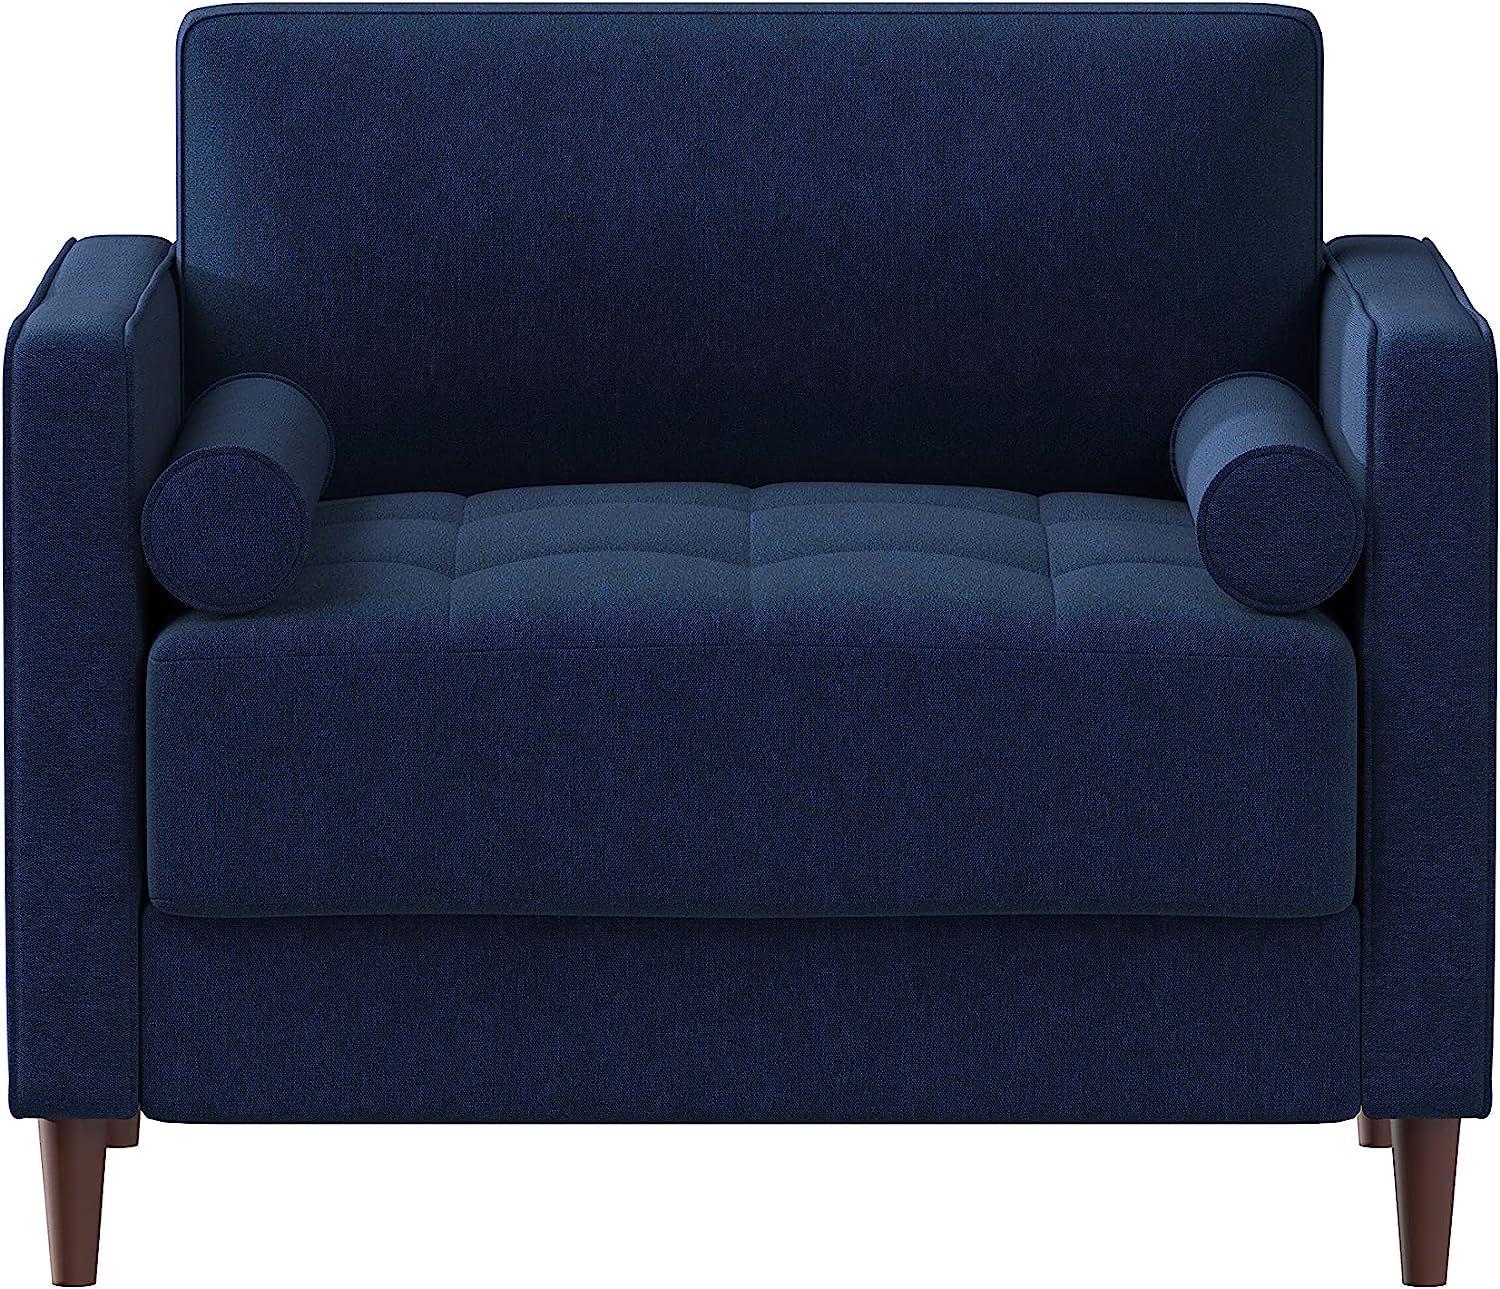 Lifestyle Solutions Lexington Armchair, 39.8" W x 31.1" D x 33.5" H, Navy Blue | Amazon (US)